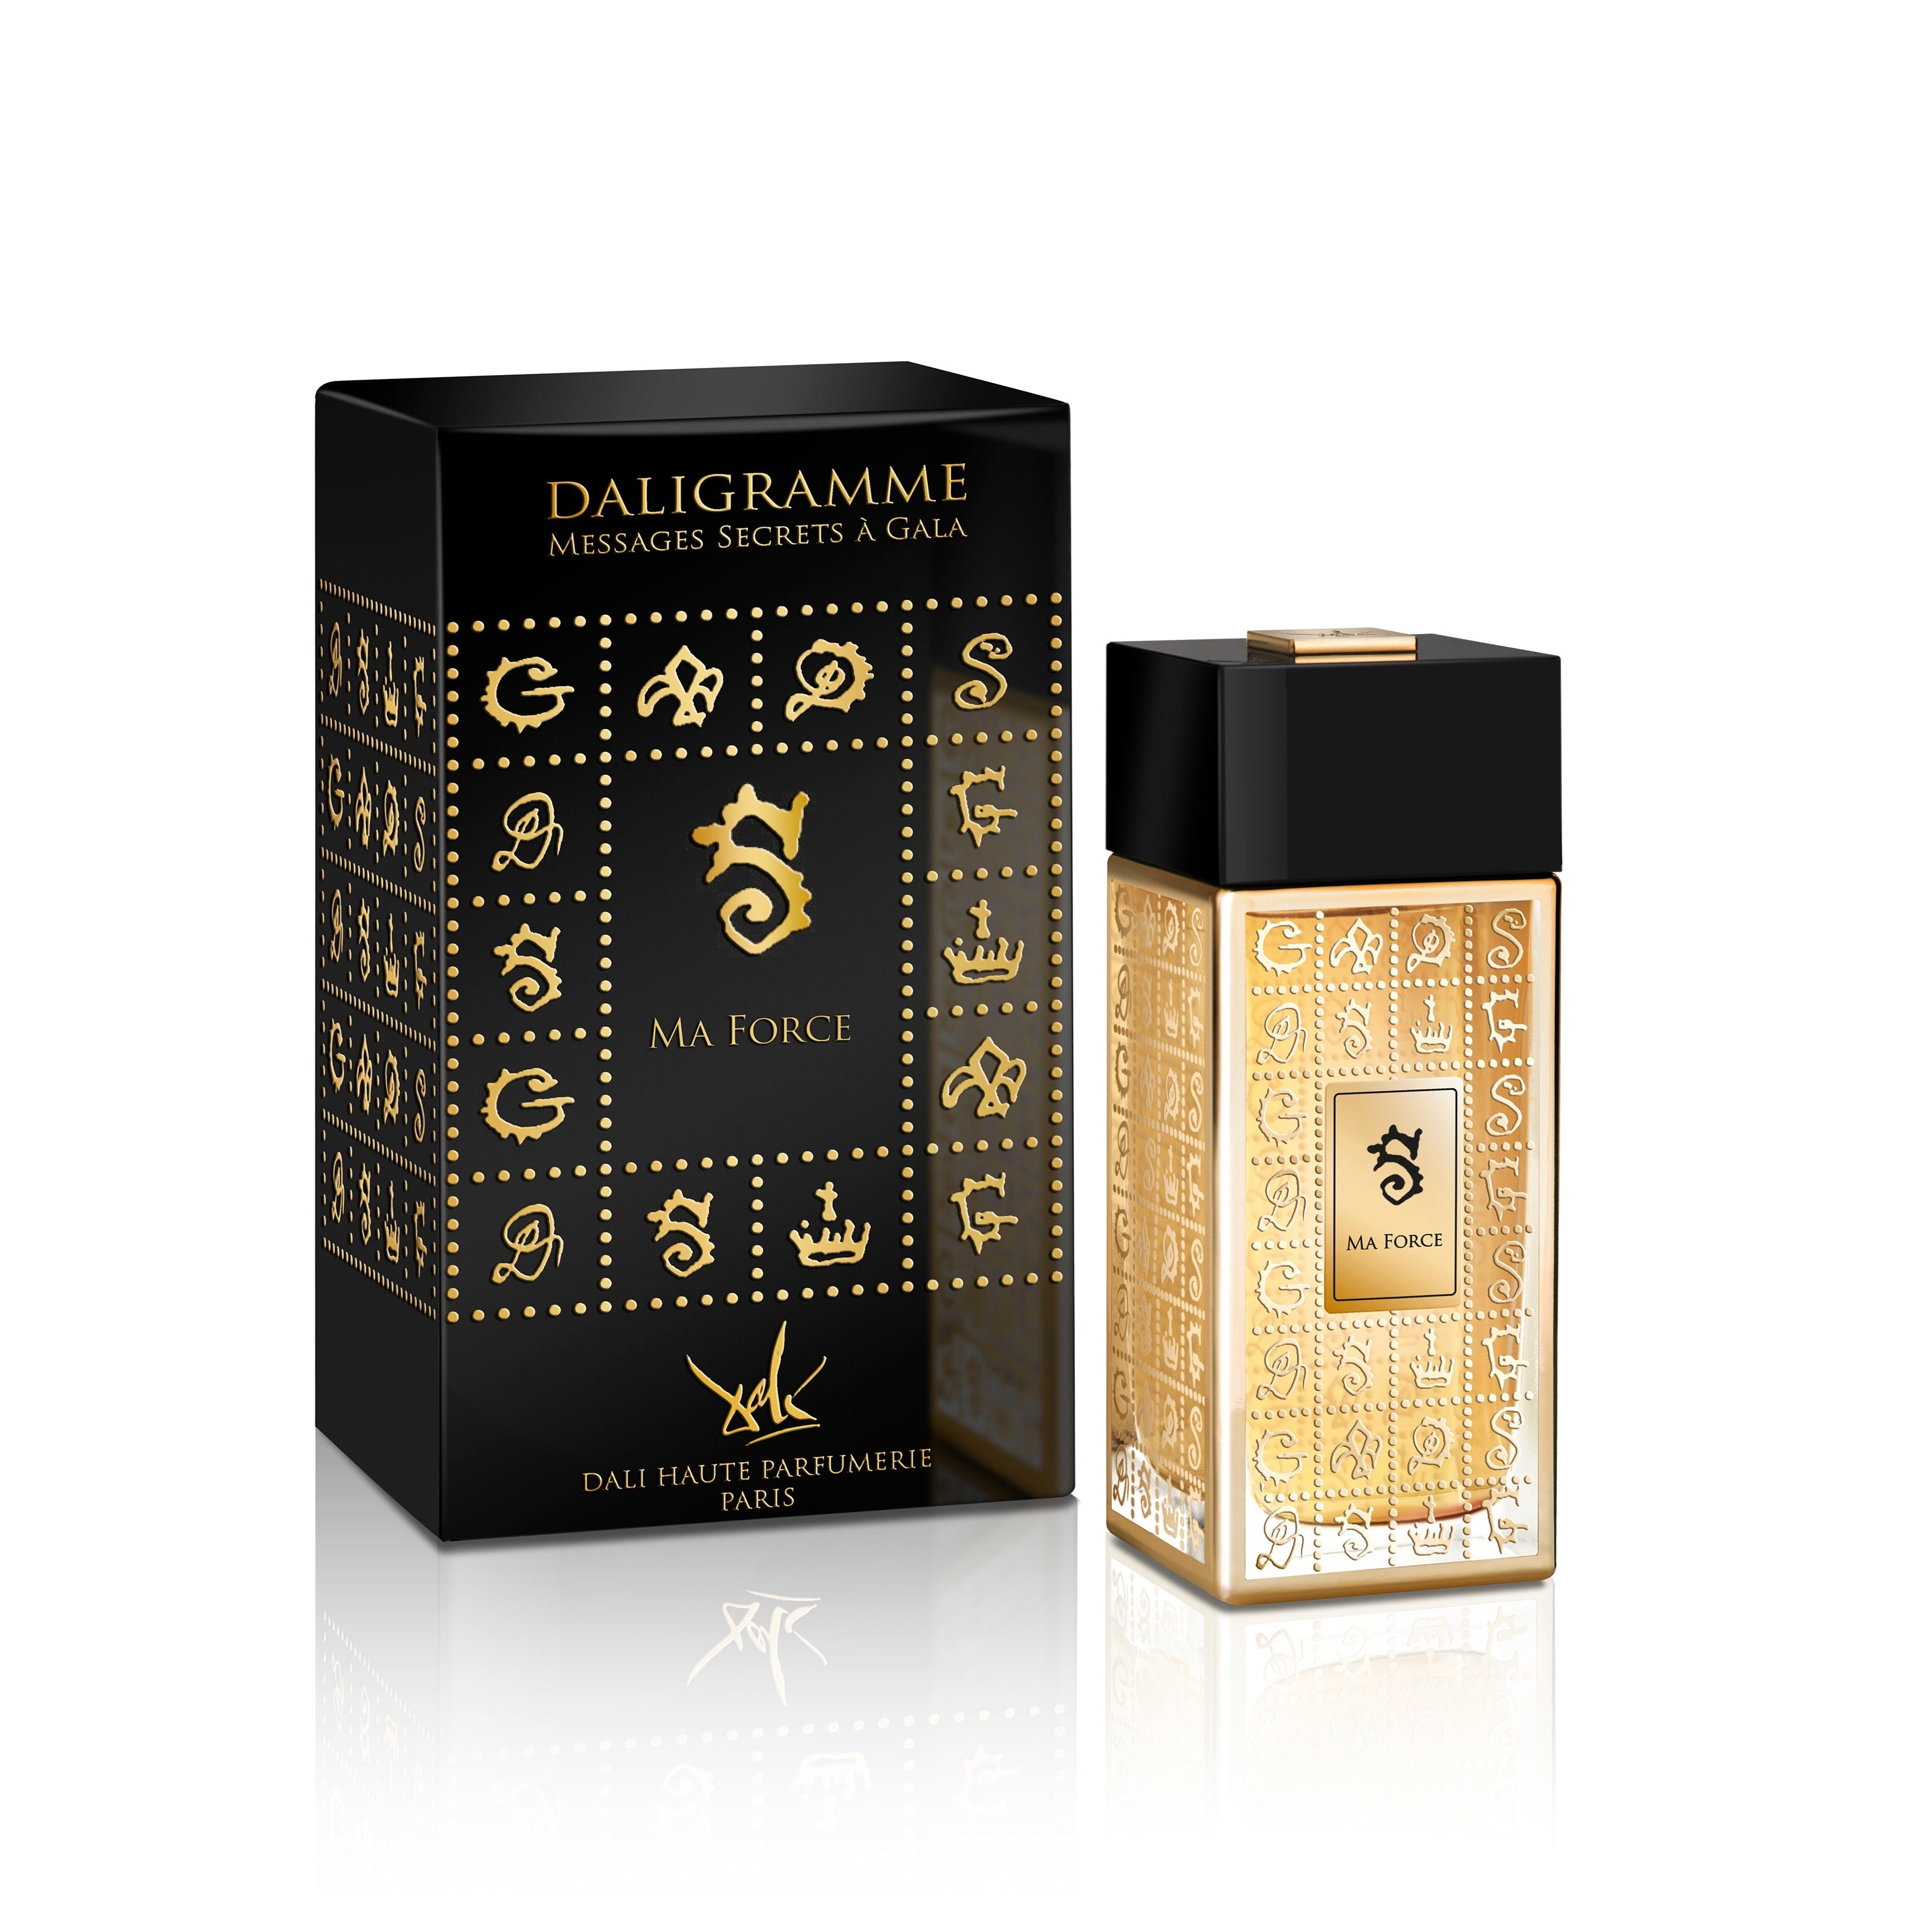 Ma Force 100ml Eau de Parfum Bottle and Box by Dalí Haute Parfumerie